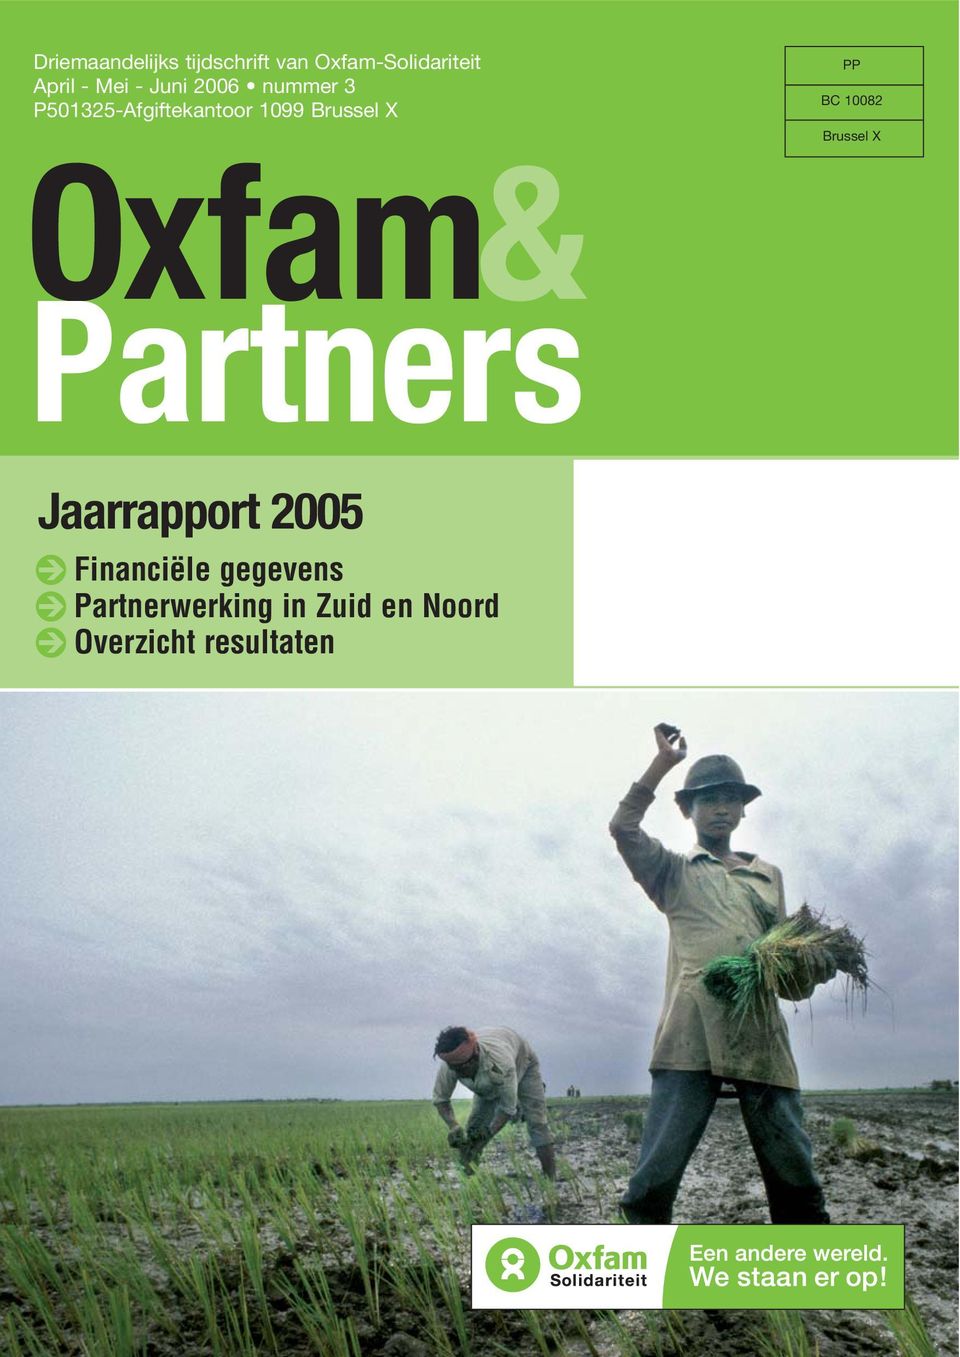 BC 10082 Brussel X Oxfam& Partners Jaarrapport 2005 é